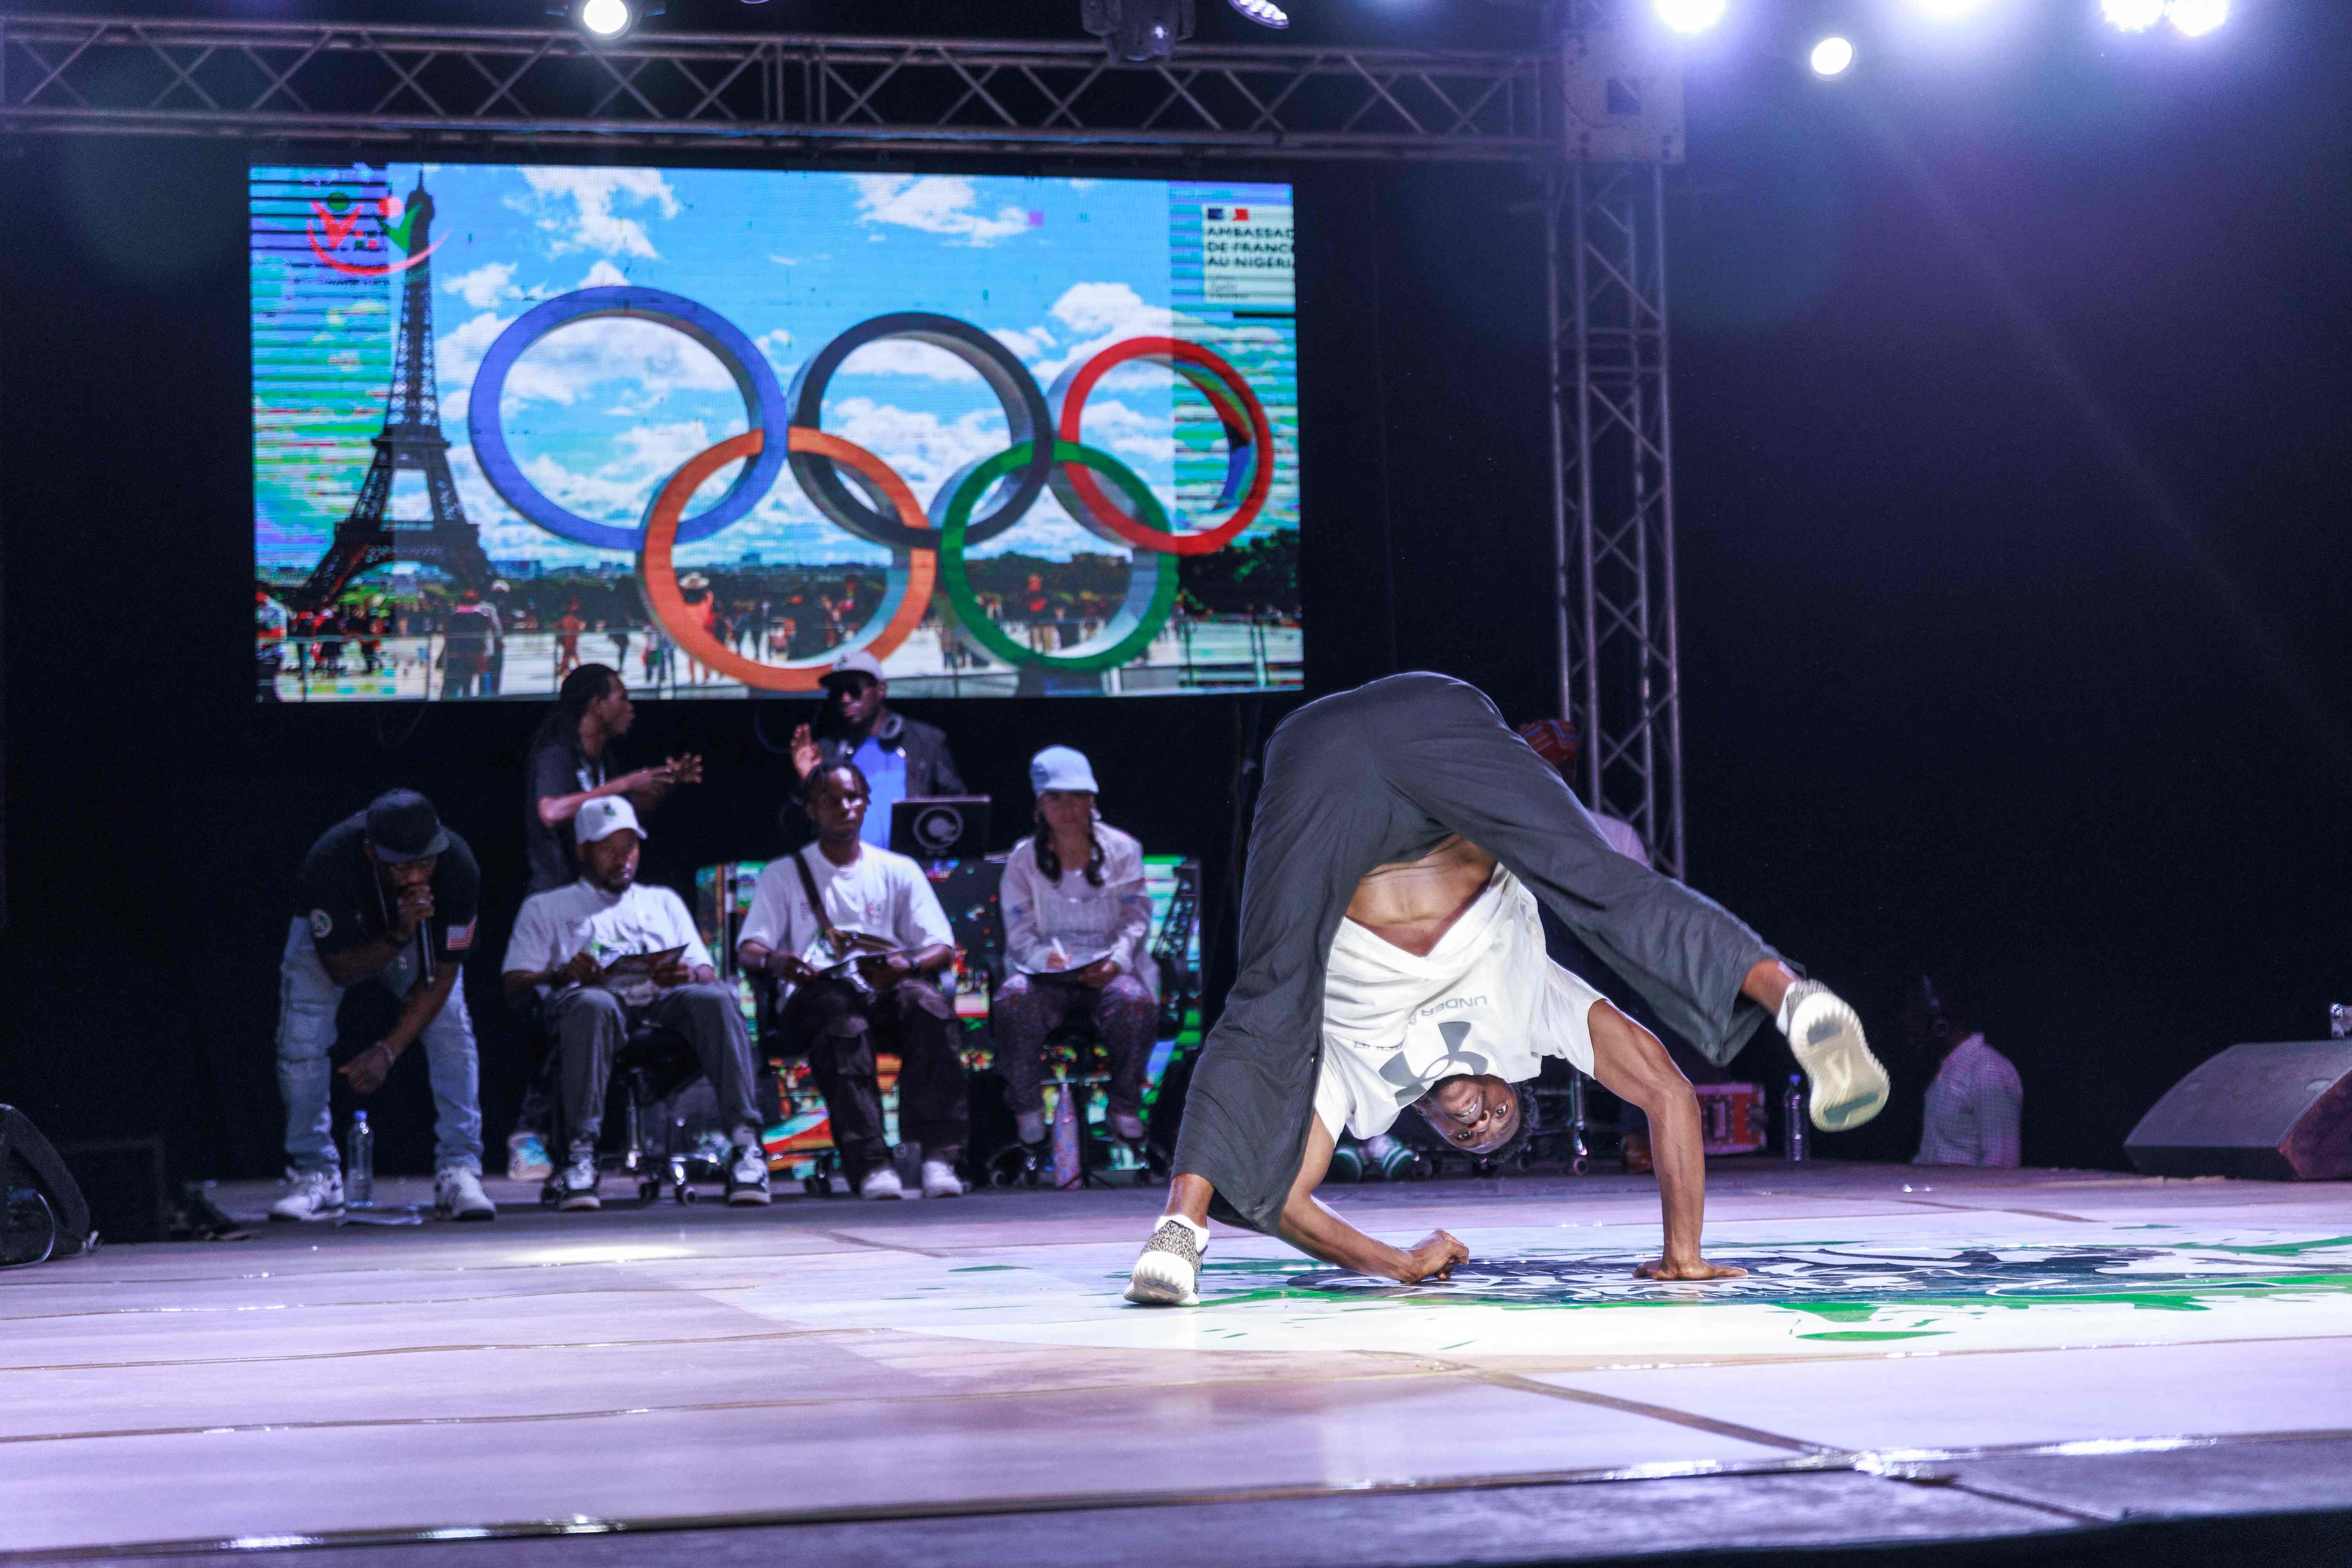 El breakdance está haciendo su debut como deporte olímpico este año.